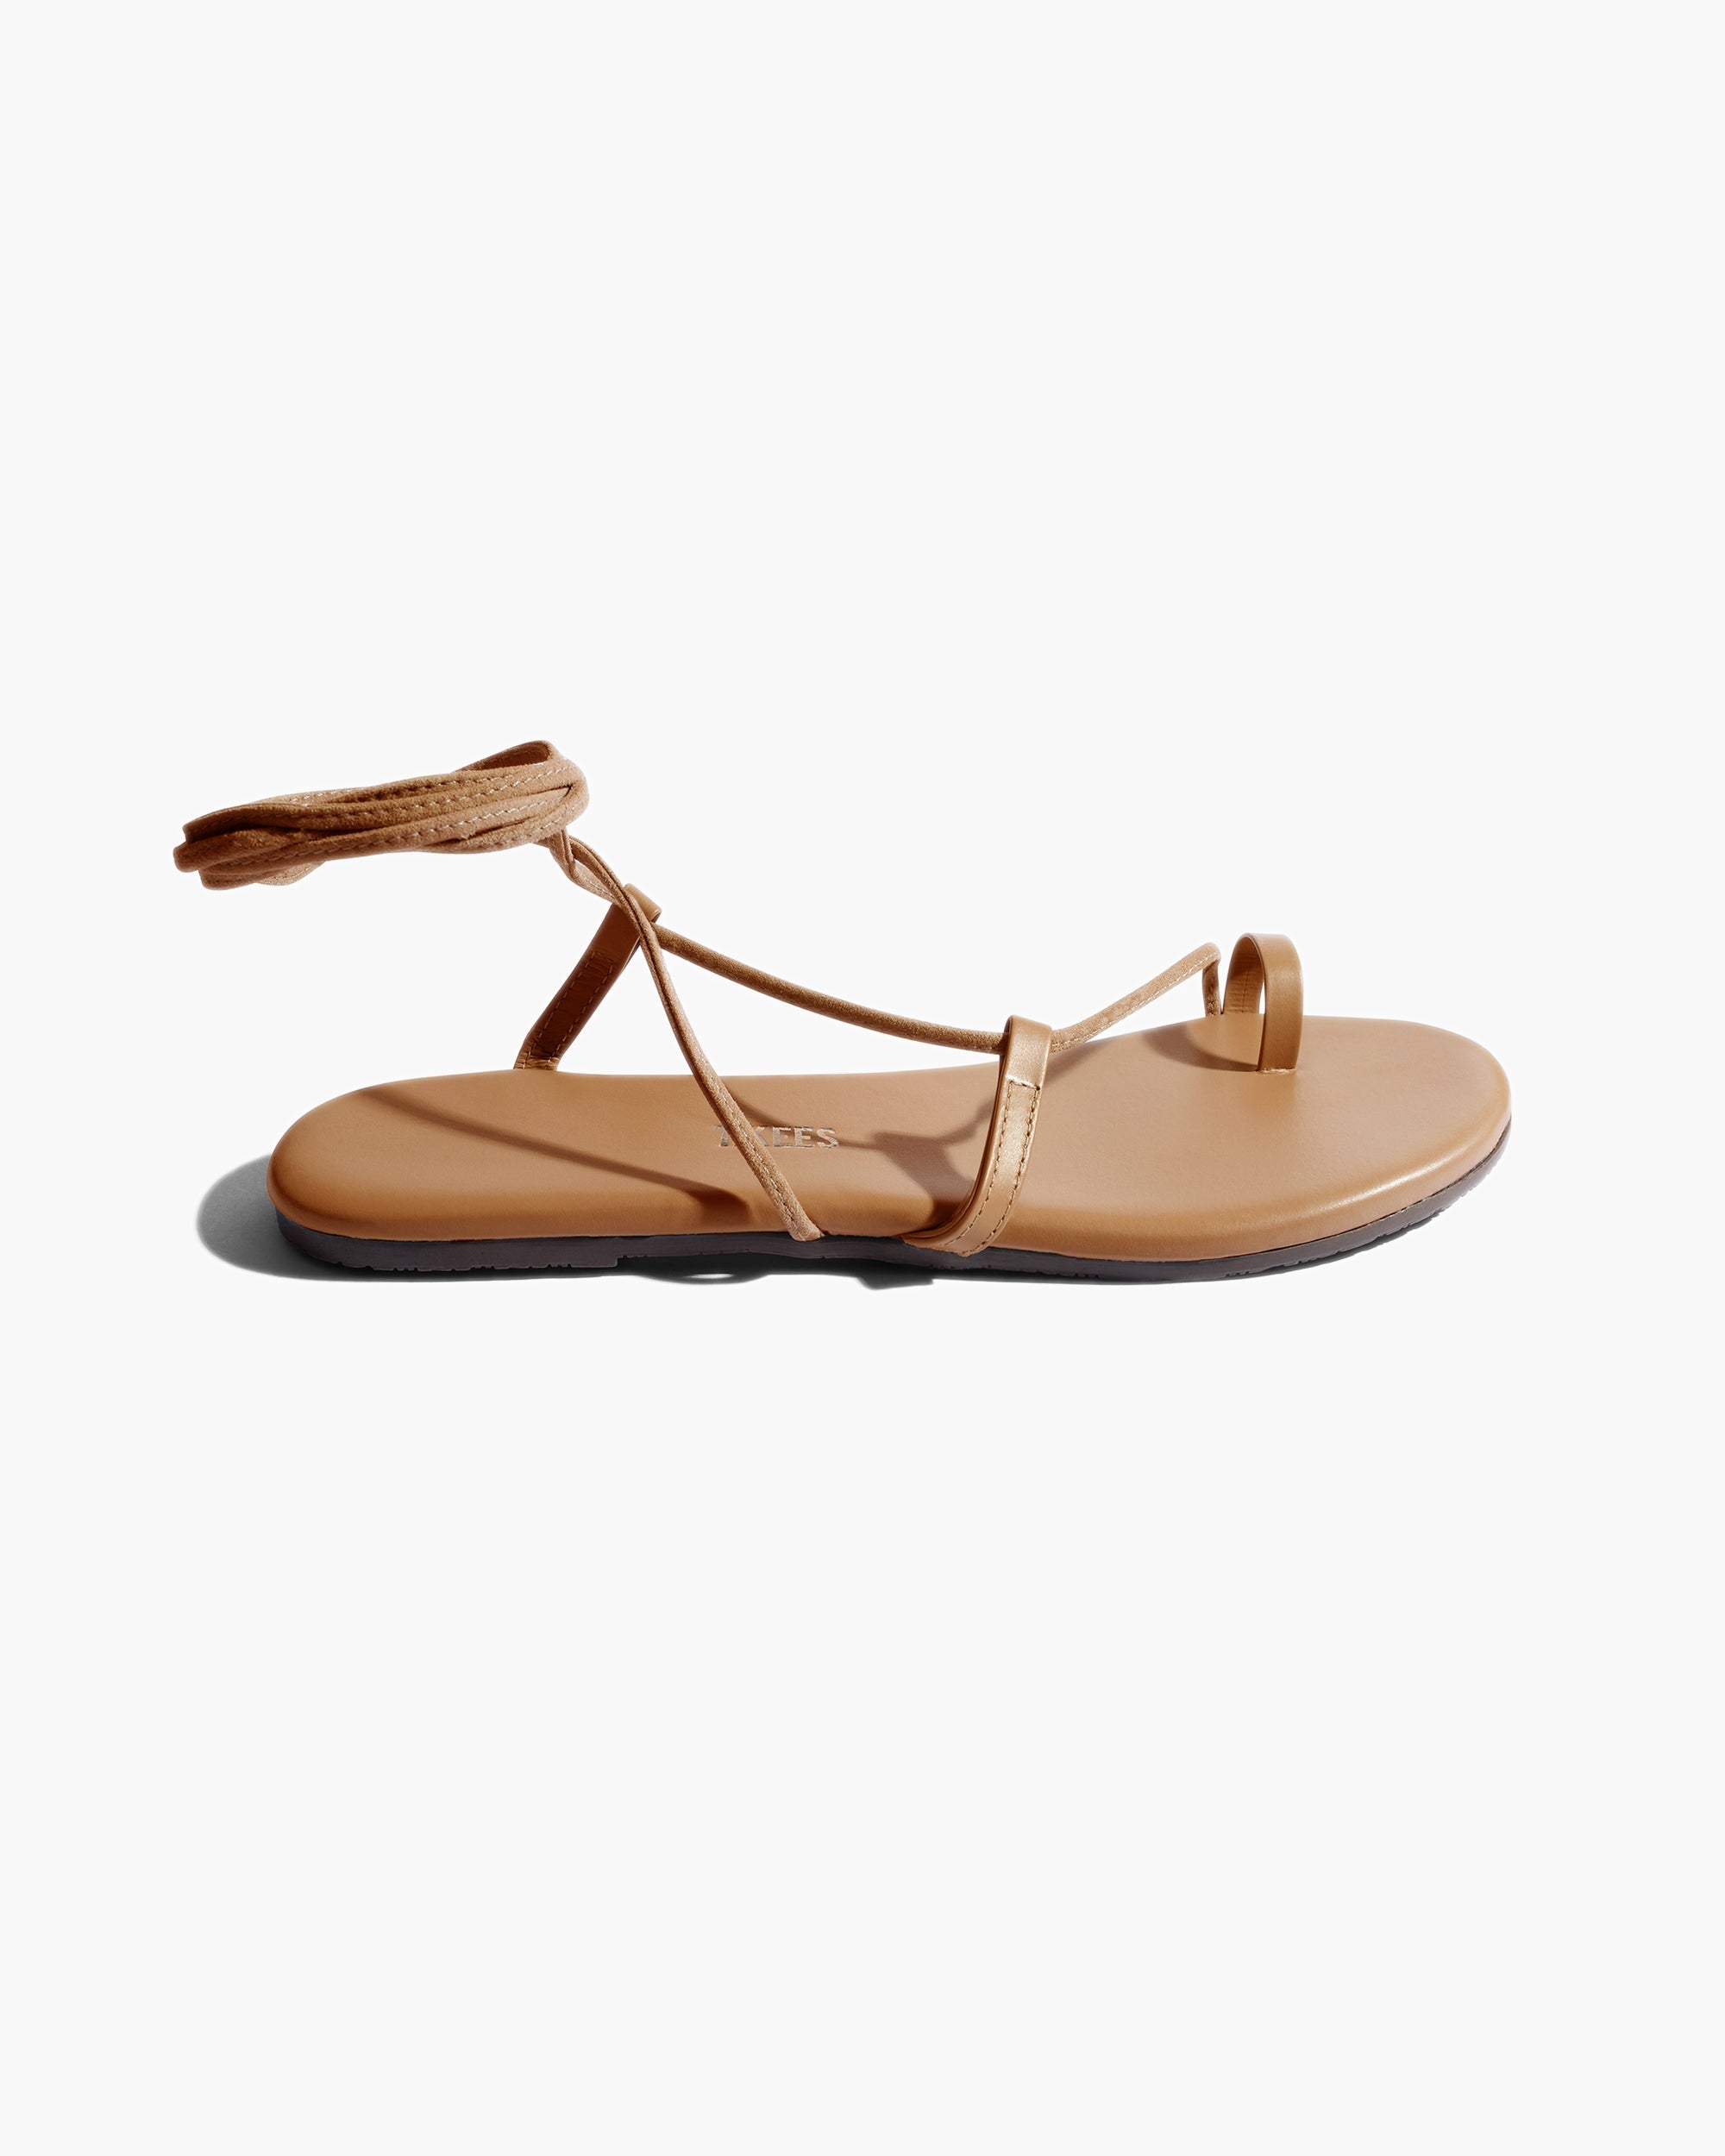 Jo in Hazelton | Sandals | Women's Footwear – TKEES